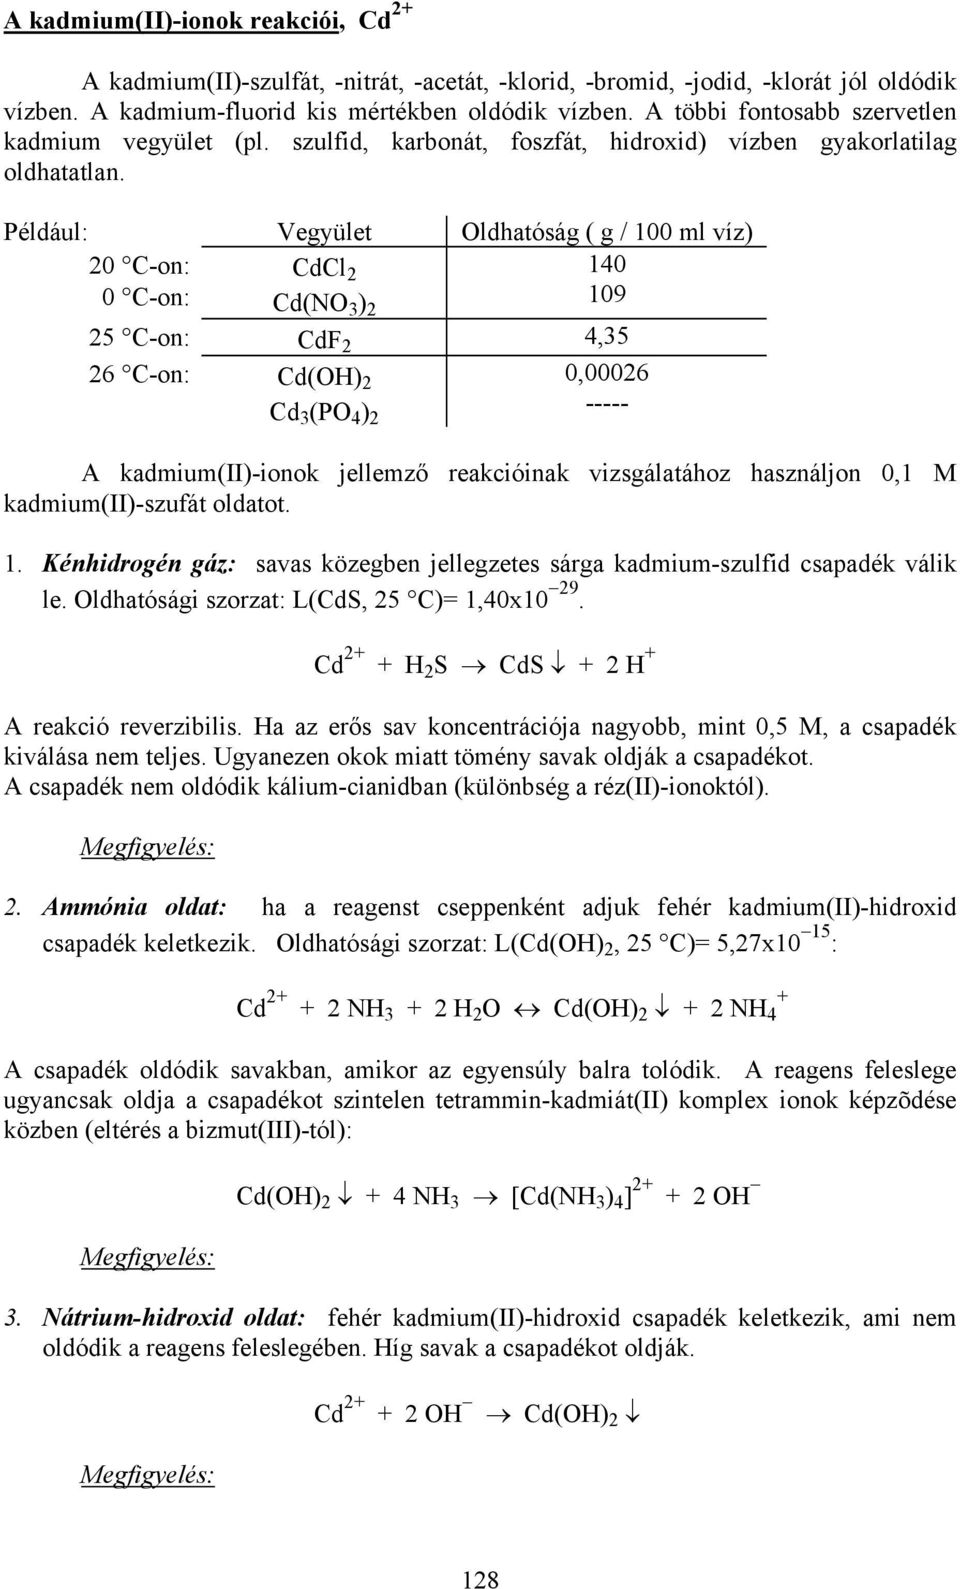 Például: Vegyület Oldhatóság ( g / 100 ml víz) 20 C-on: 0 C-on: CdCl 2 Cd(NO 3 ) 2 140 109 25 C-on: CdF 2 4,35 26 C-on: Cd(OH) 2 Cd 3 (PO 4 ) 2 0,00026 ----- A kadmium(ii)-ionok jellemző reakcióinak